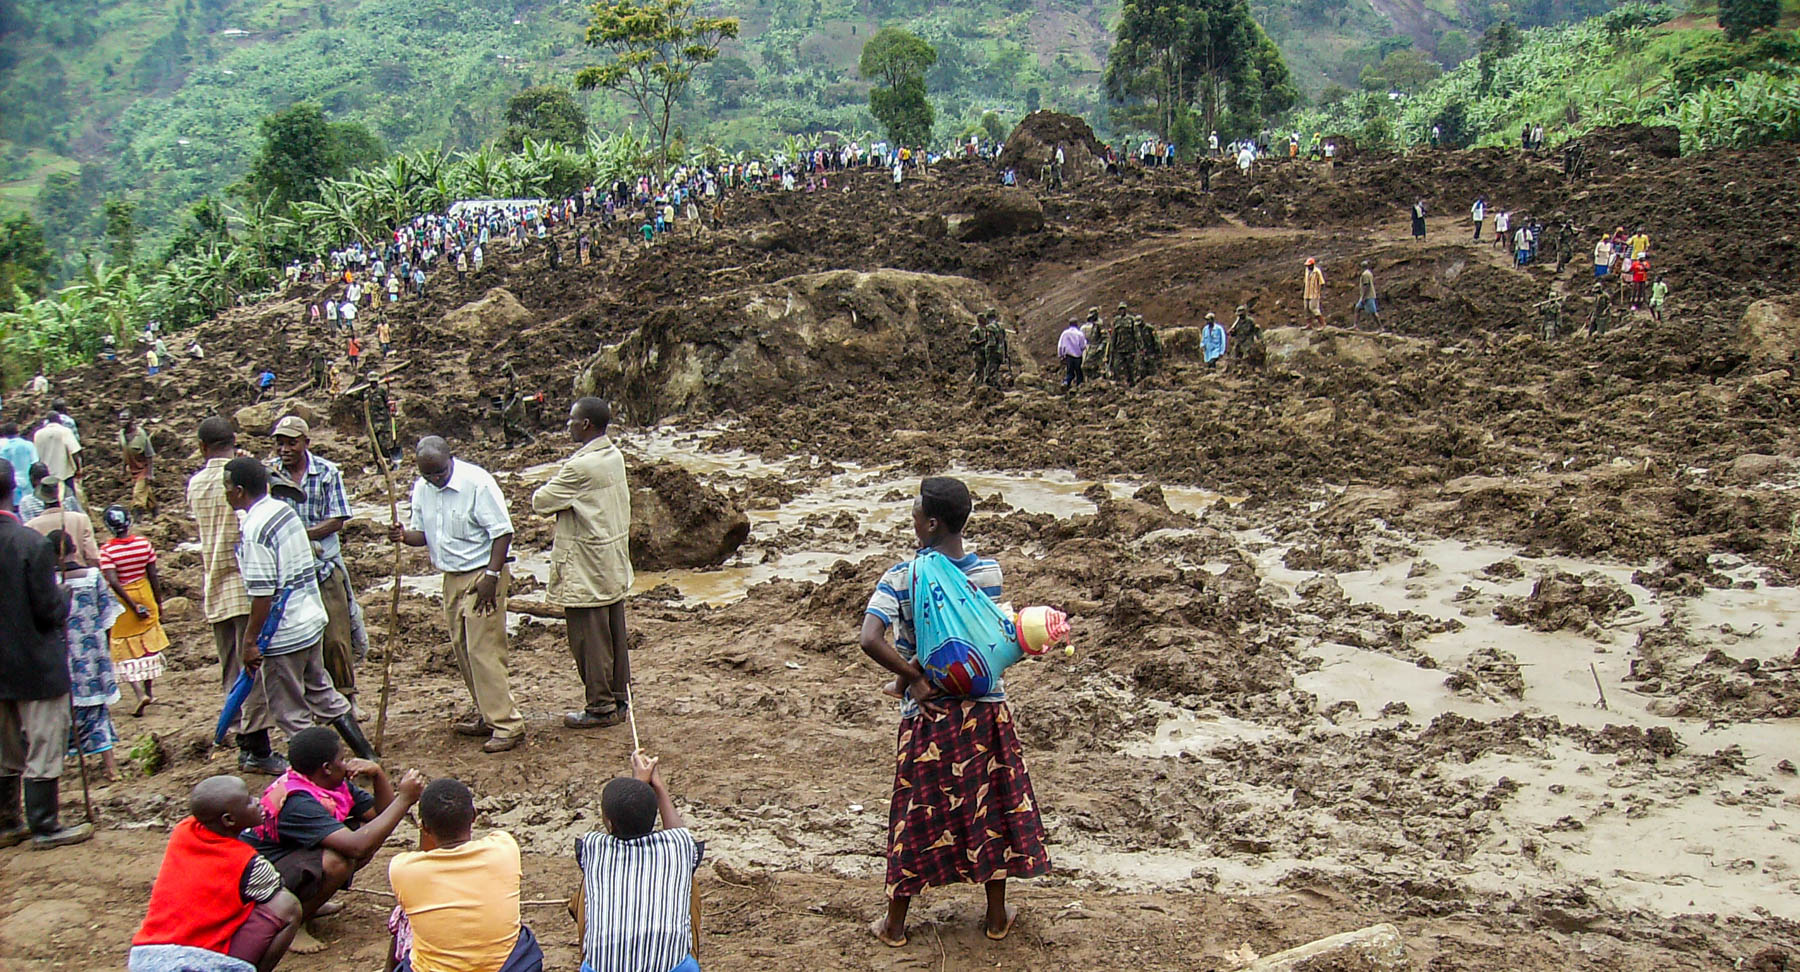 Dramatischer Bergrutsch in Uganda - Überlebende suchen verschüttete Opfer